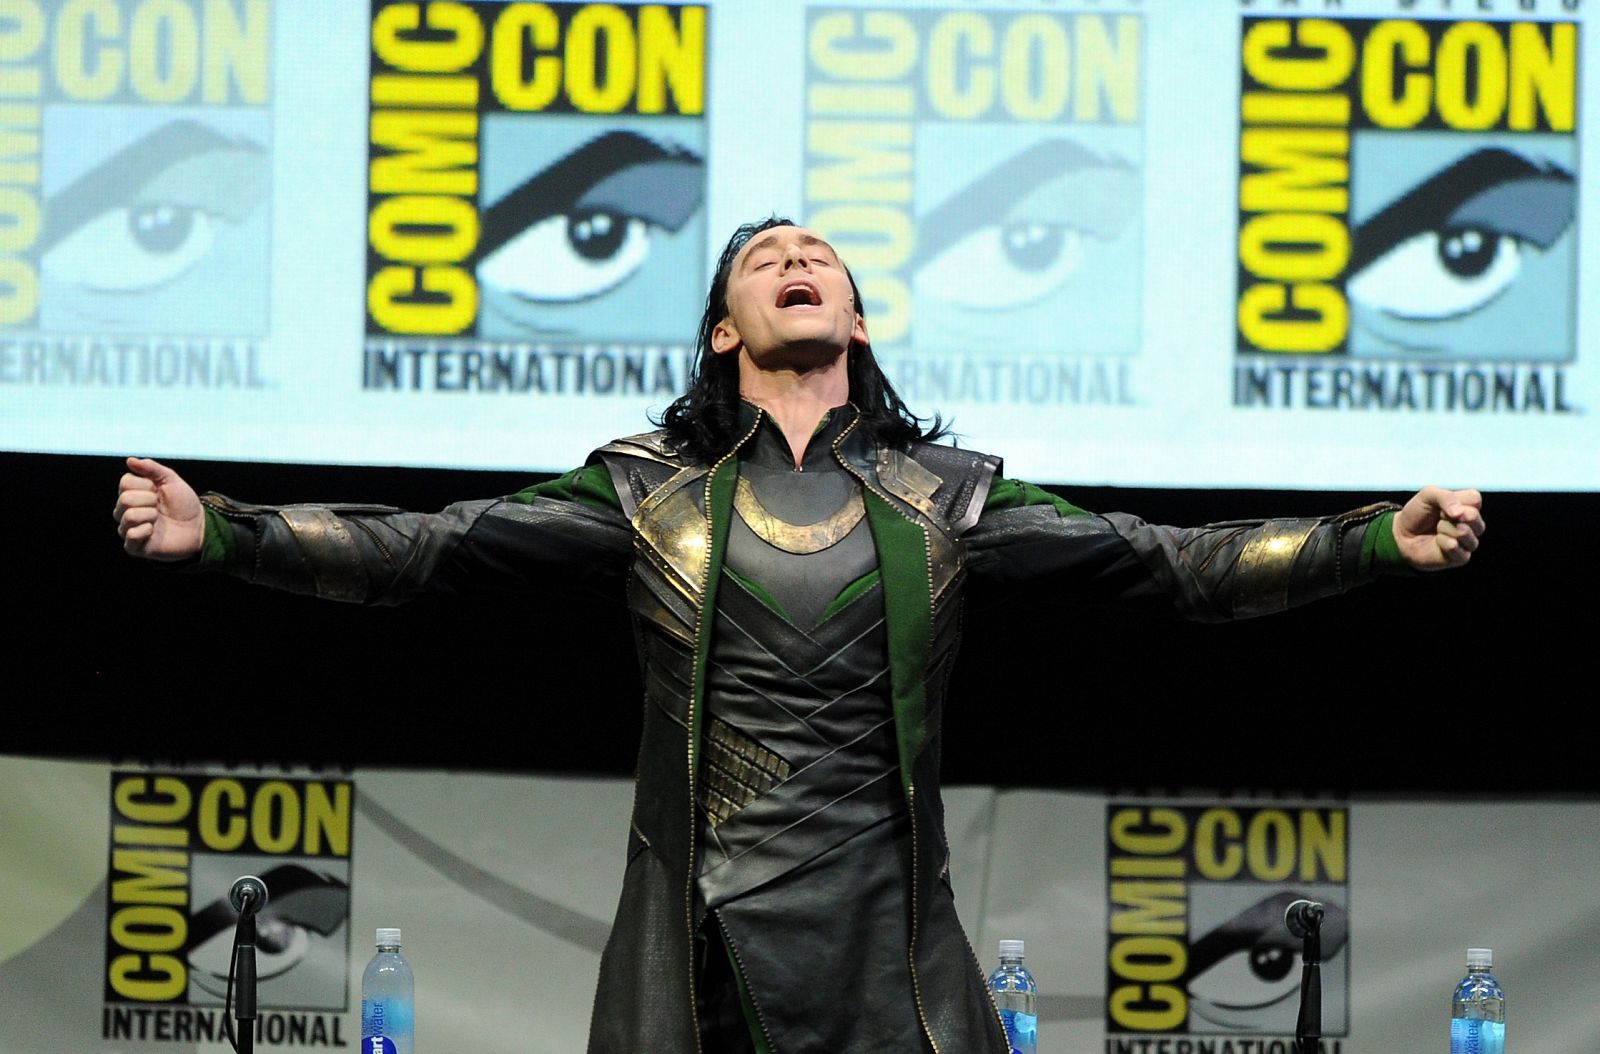 El actorTom Hiddleston representa al villano Loki